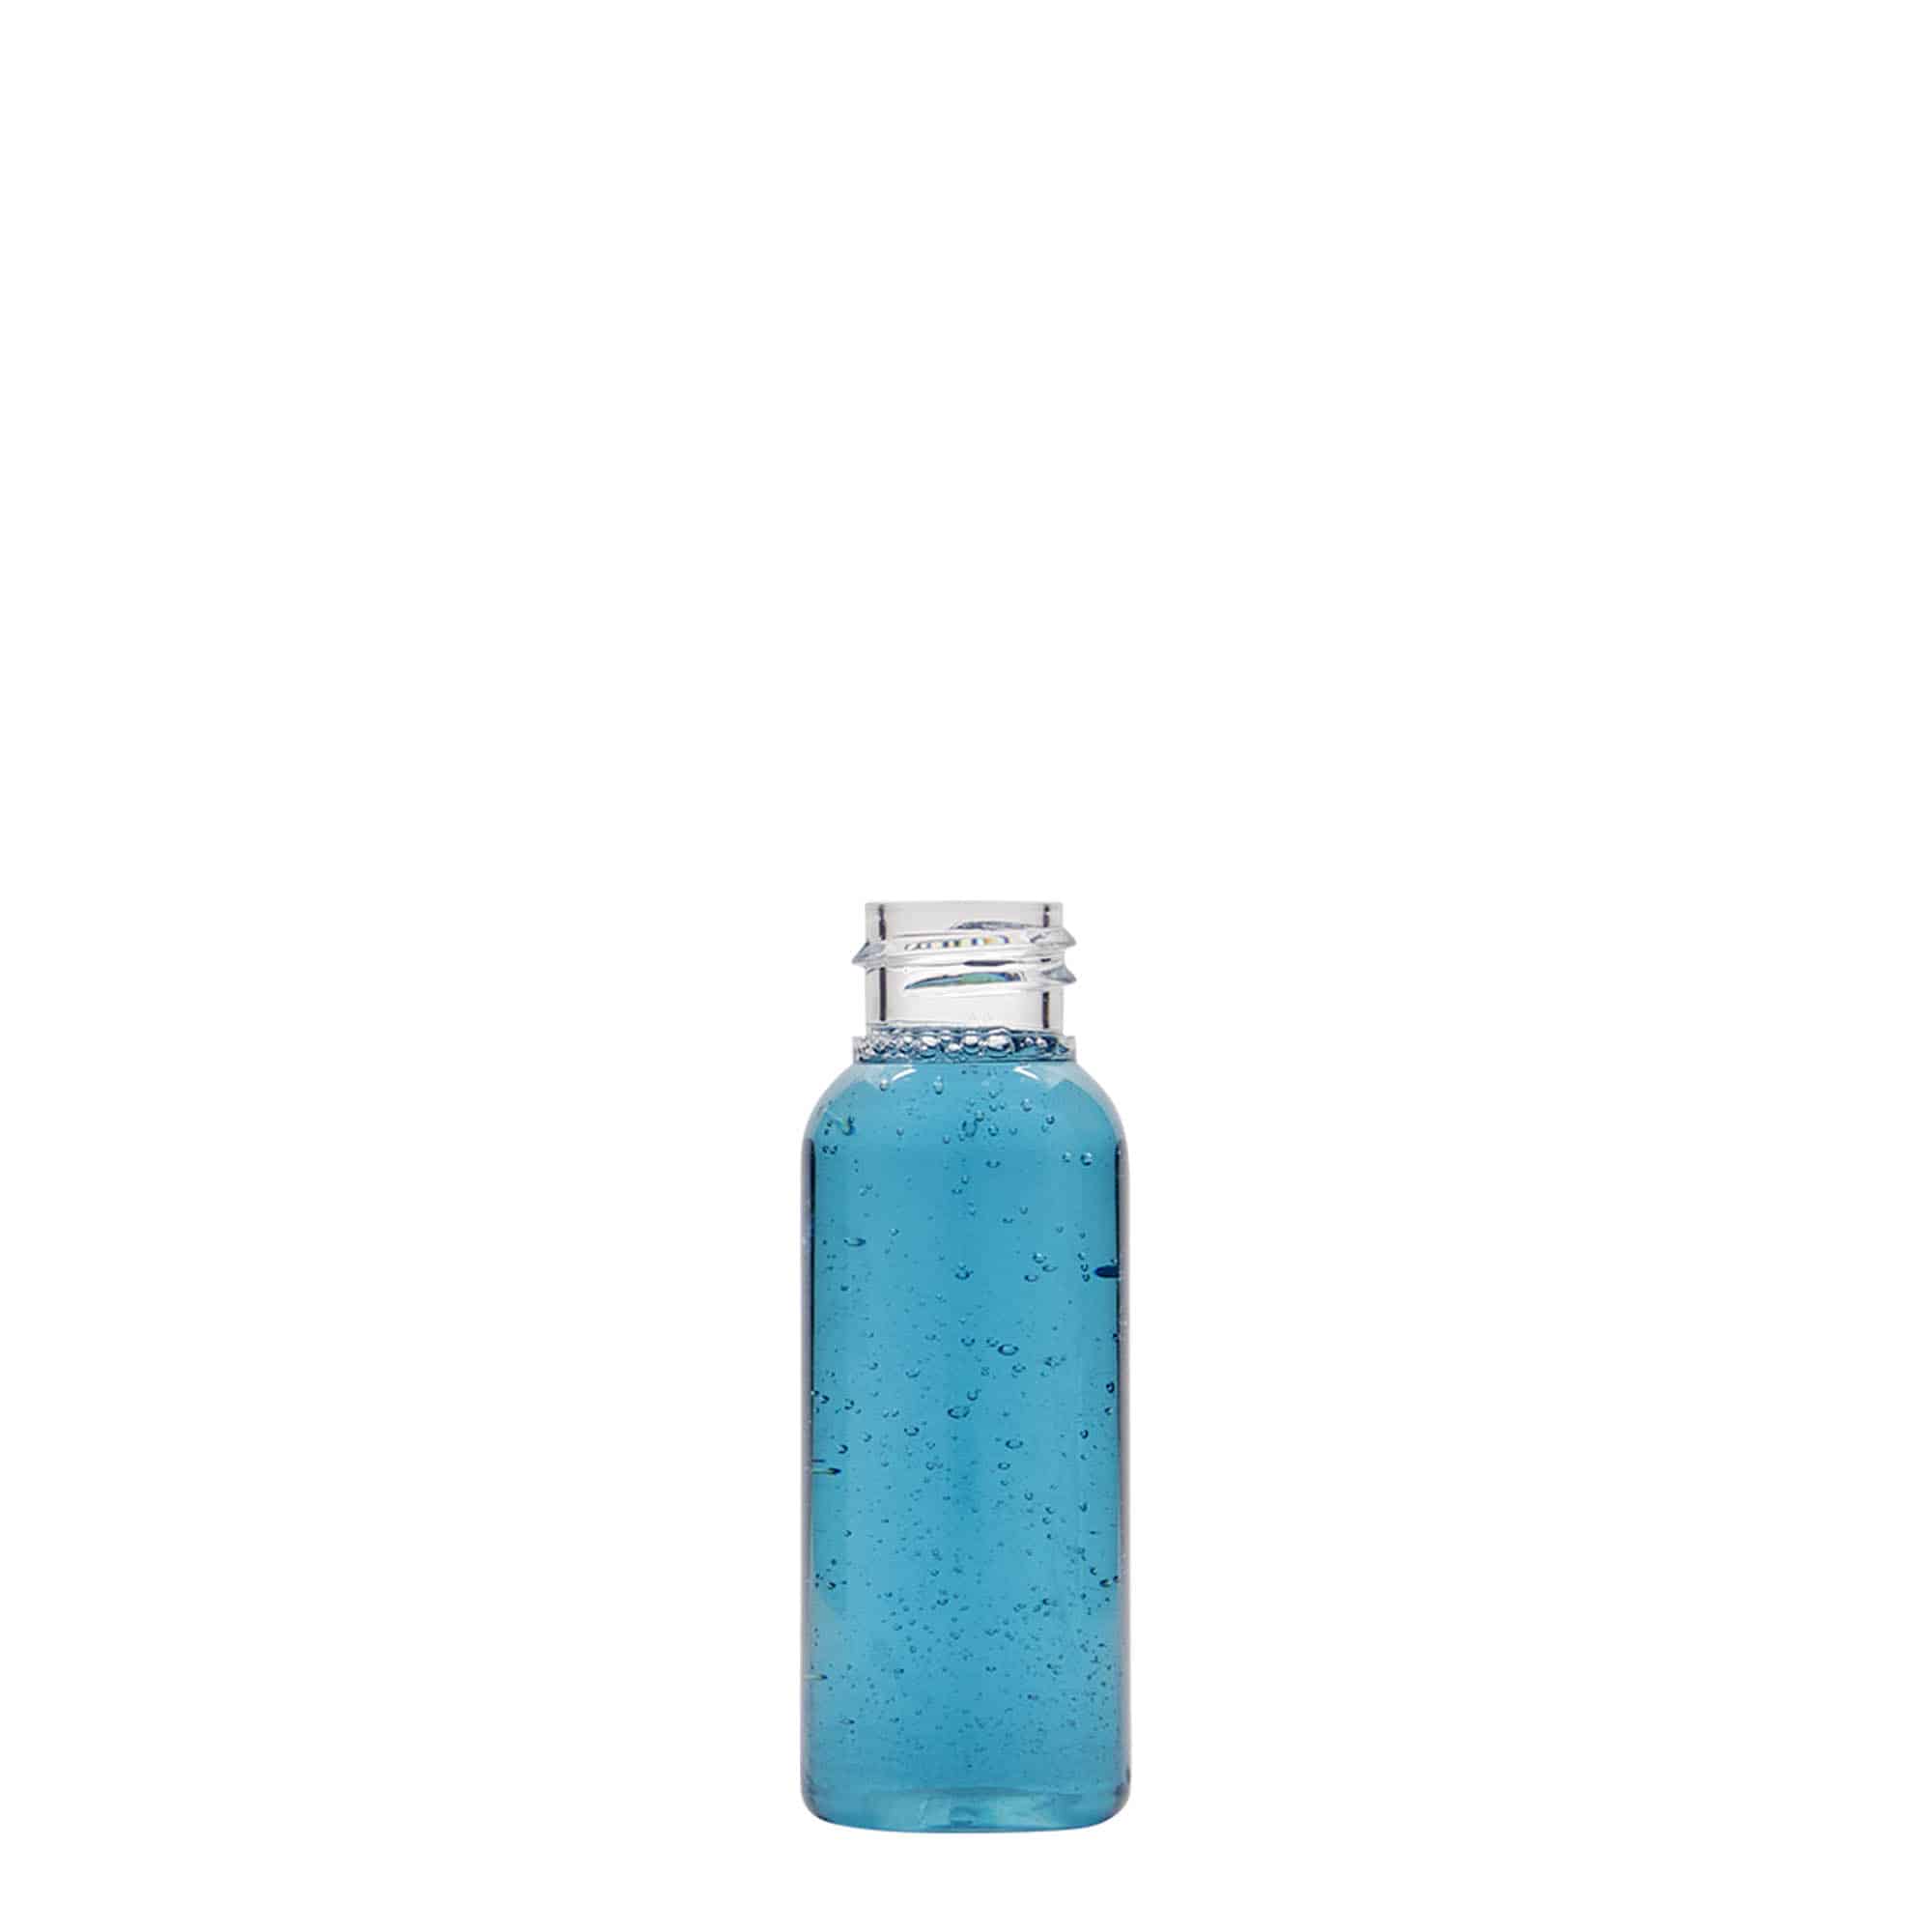 30 ml PET bottle 'Pegasus', plastic, closure: GPI 20/410